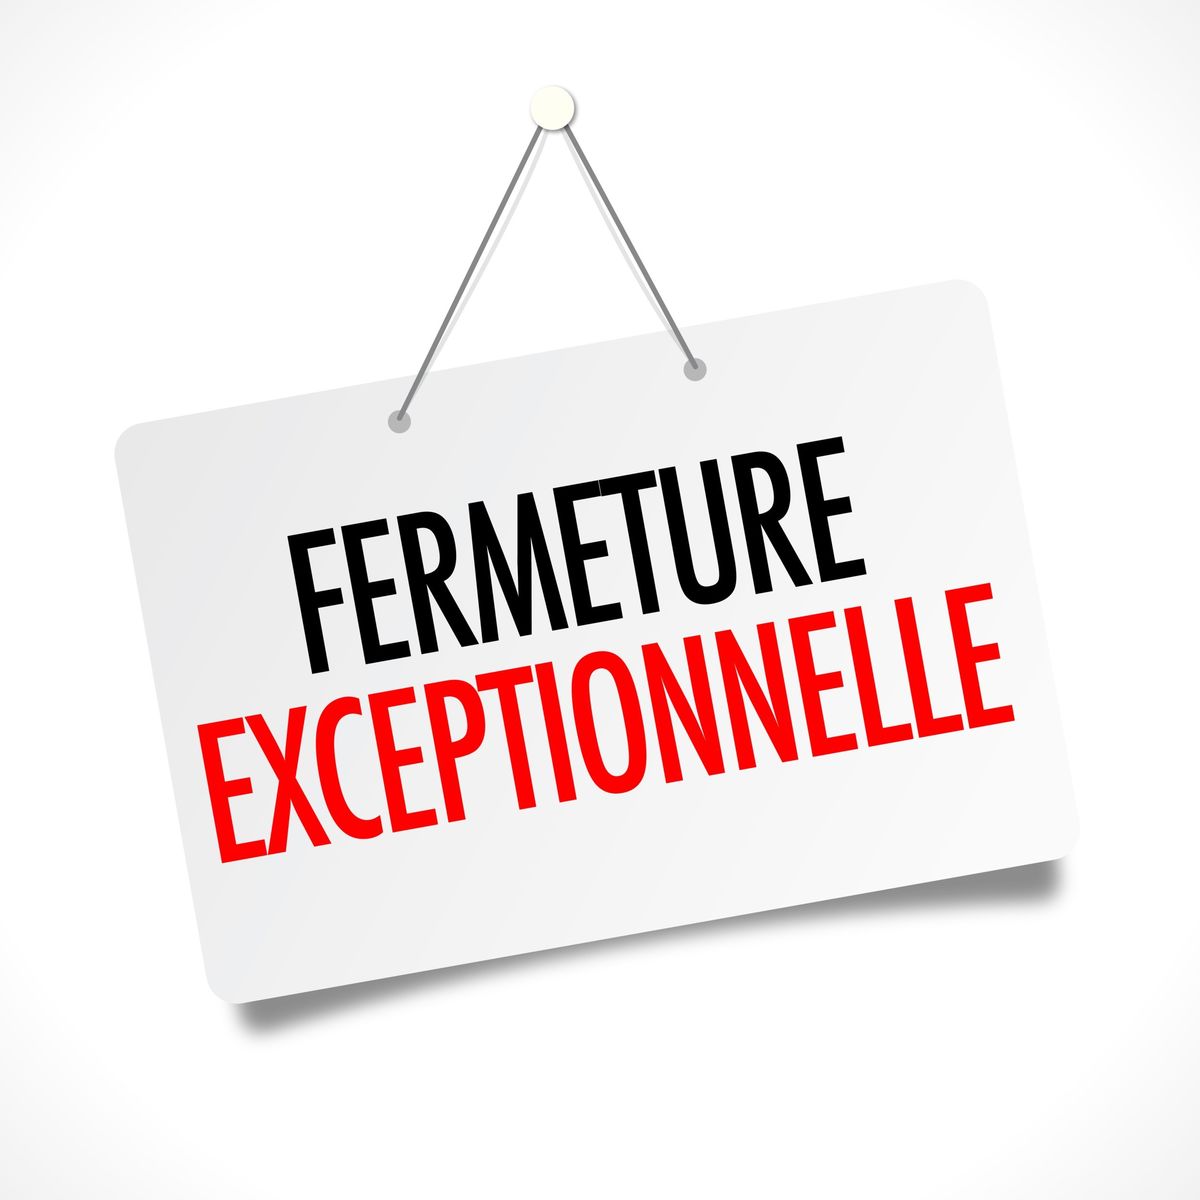 You are currently viewing Fermeture exceptionnelle de l’établissement